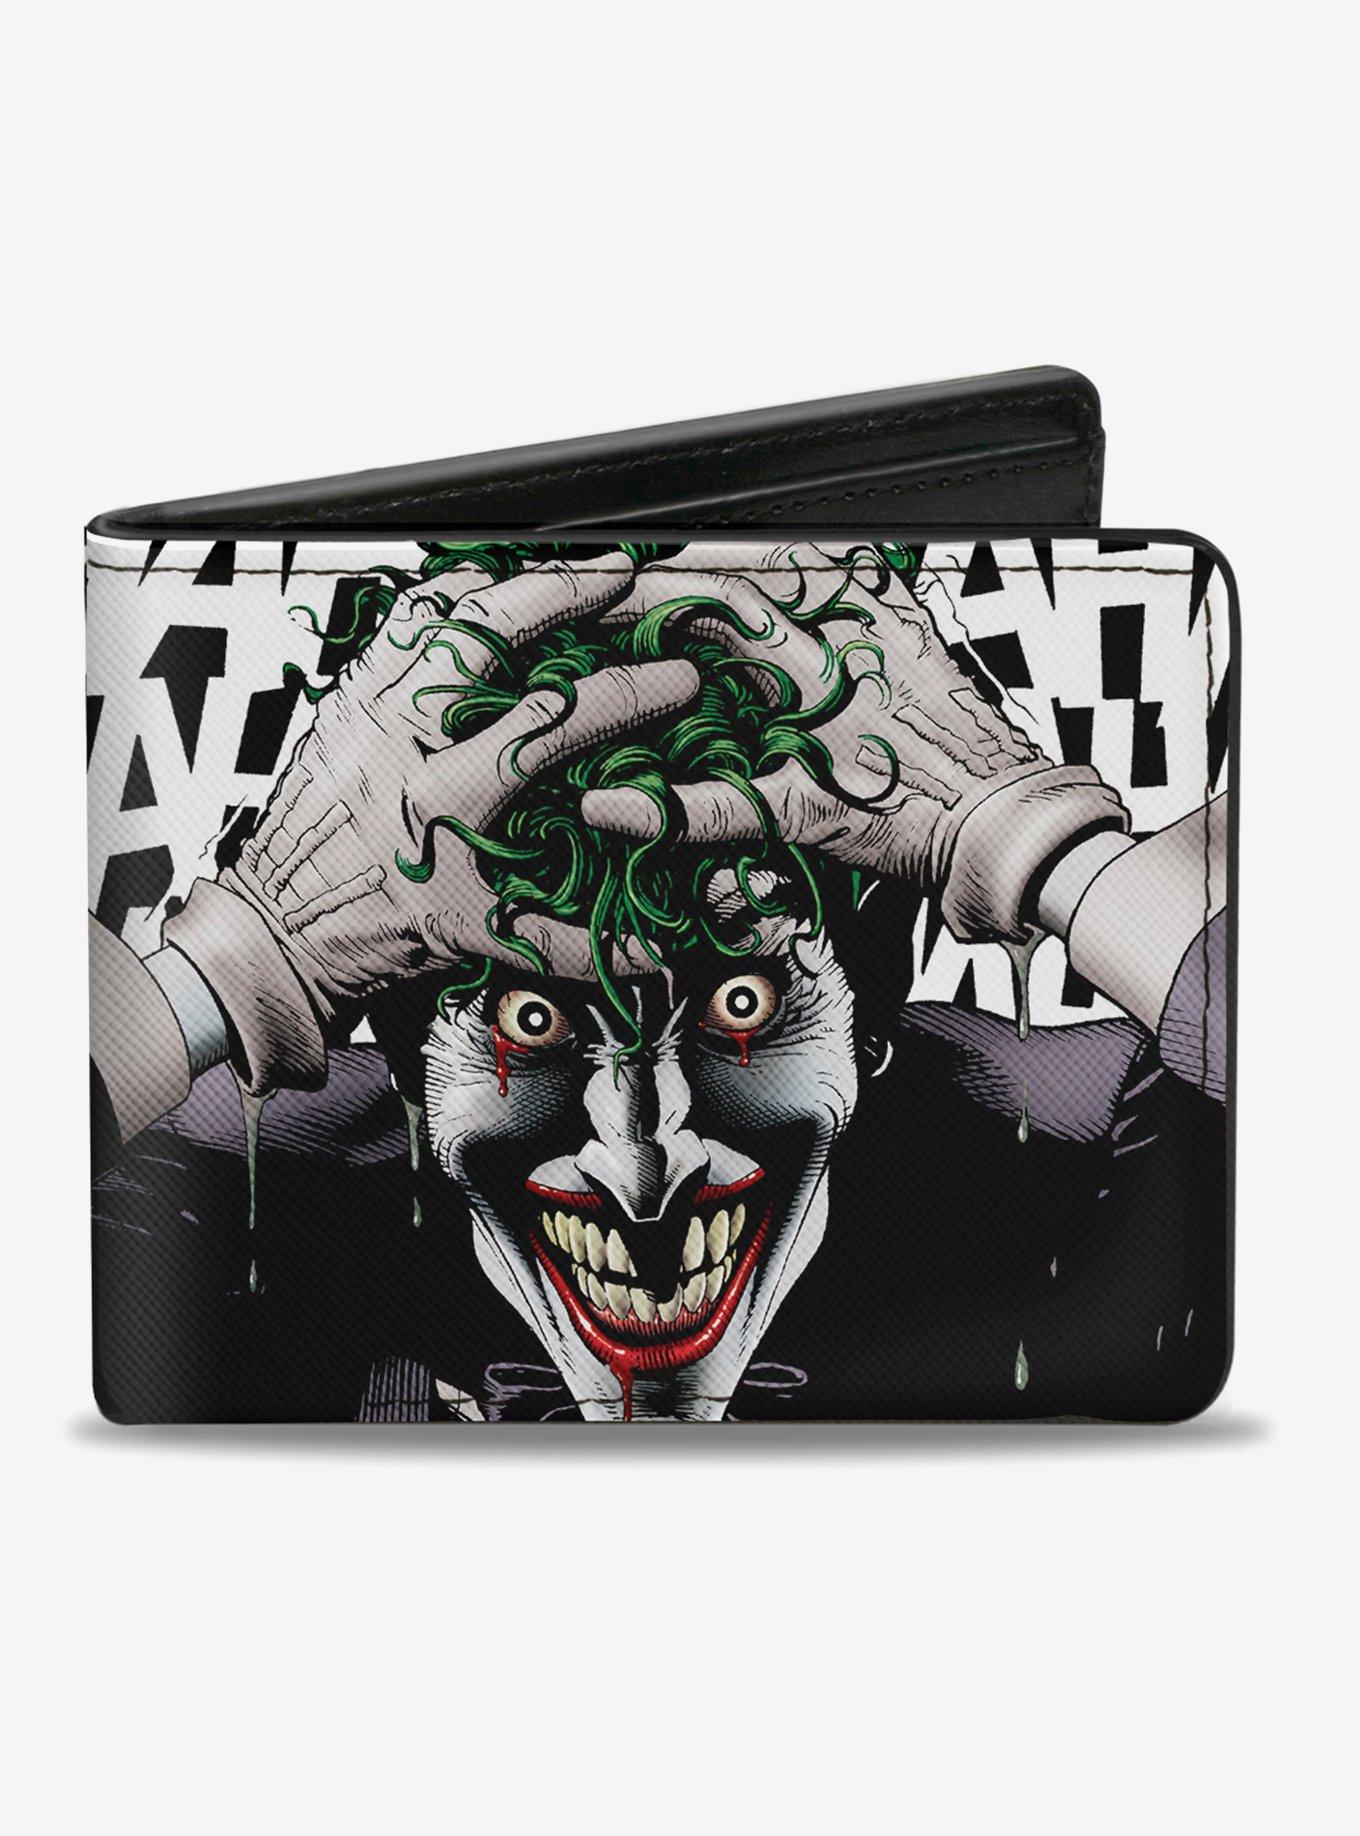 Bi-Fold Wallet - Batman Vs Joker Graffiti Collage White Grays